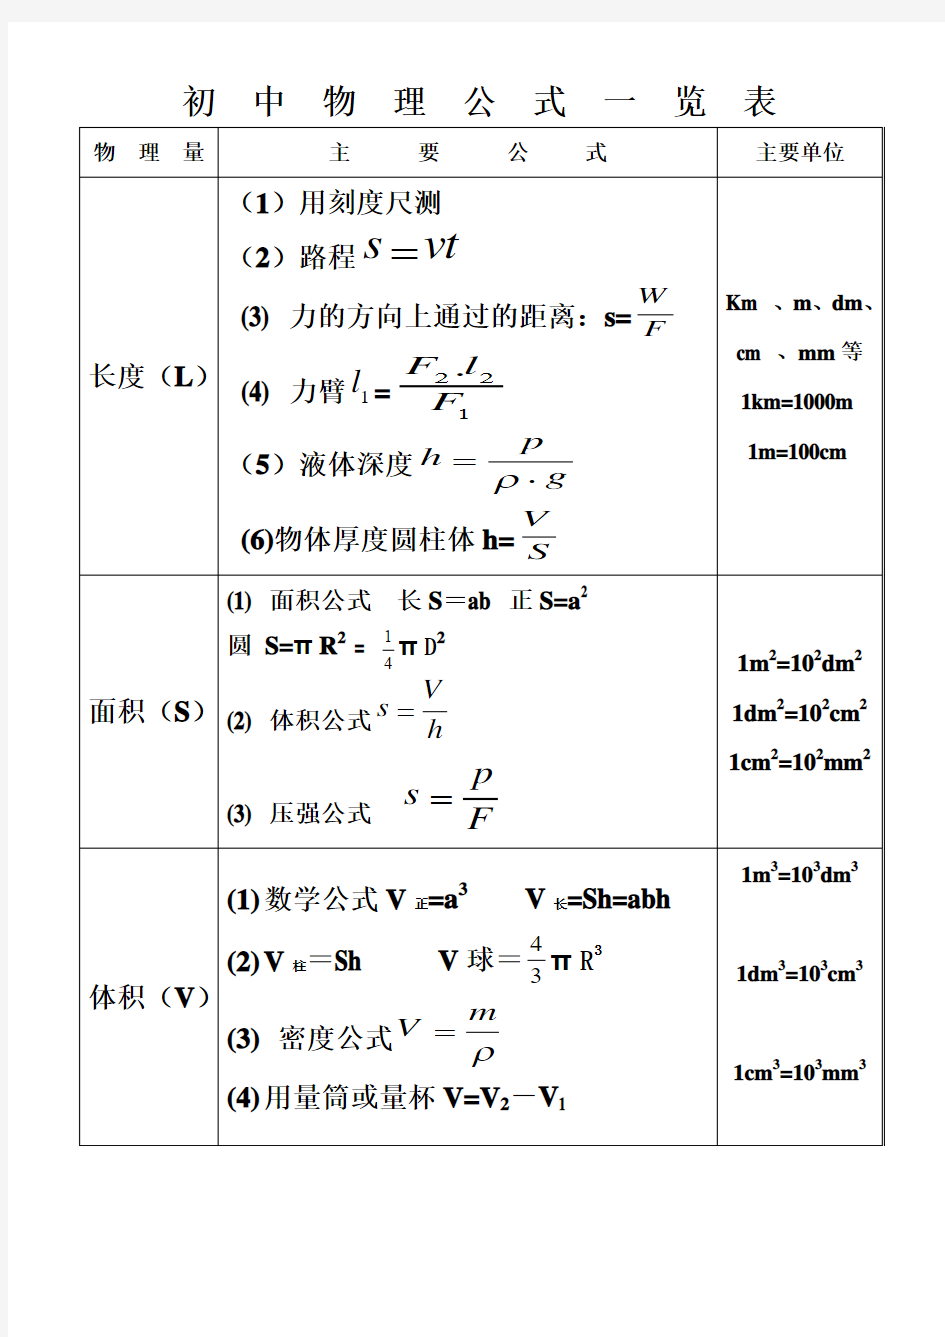 初中物理公式一览表(179K